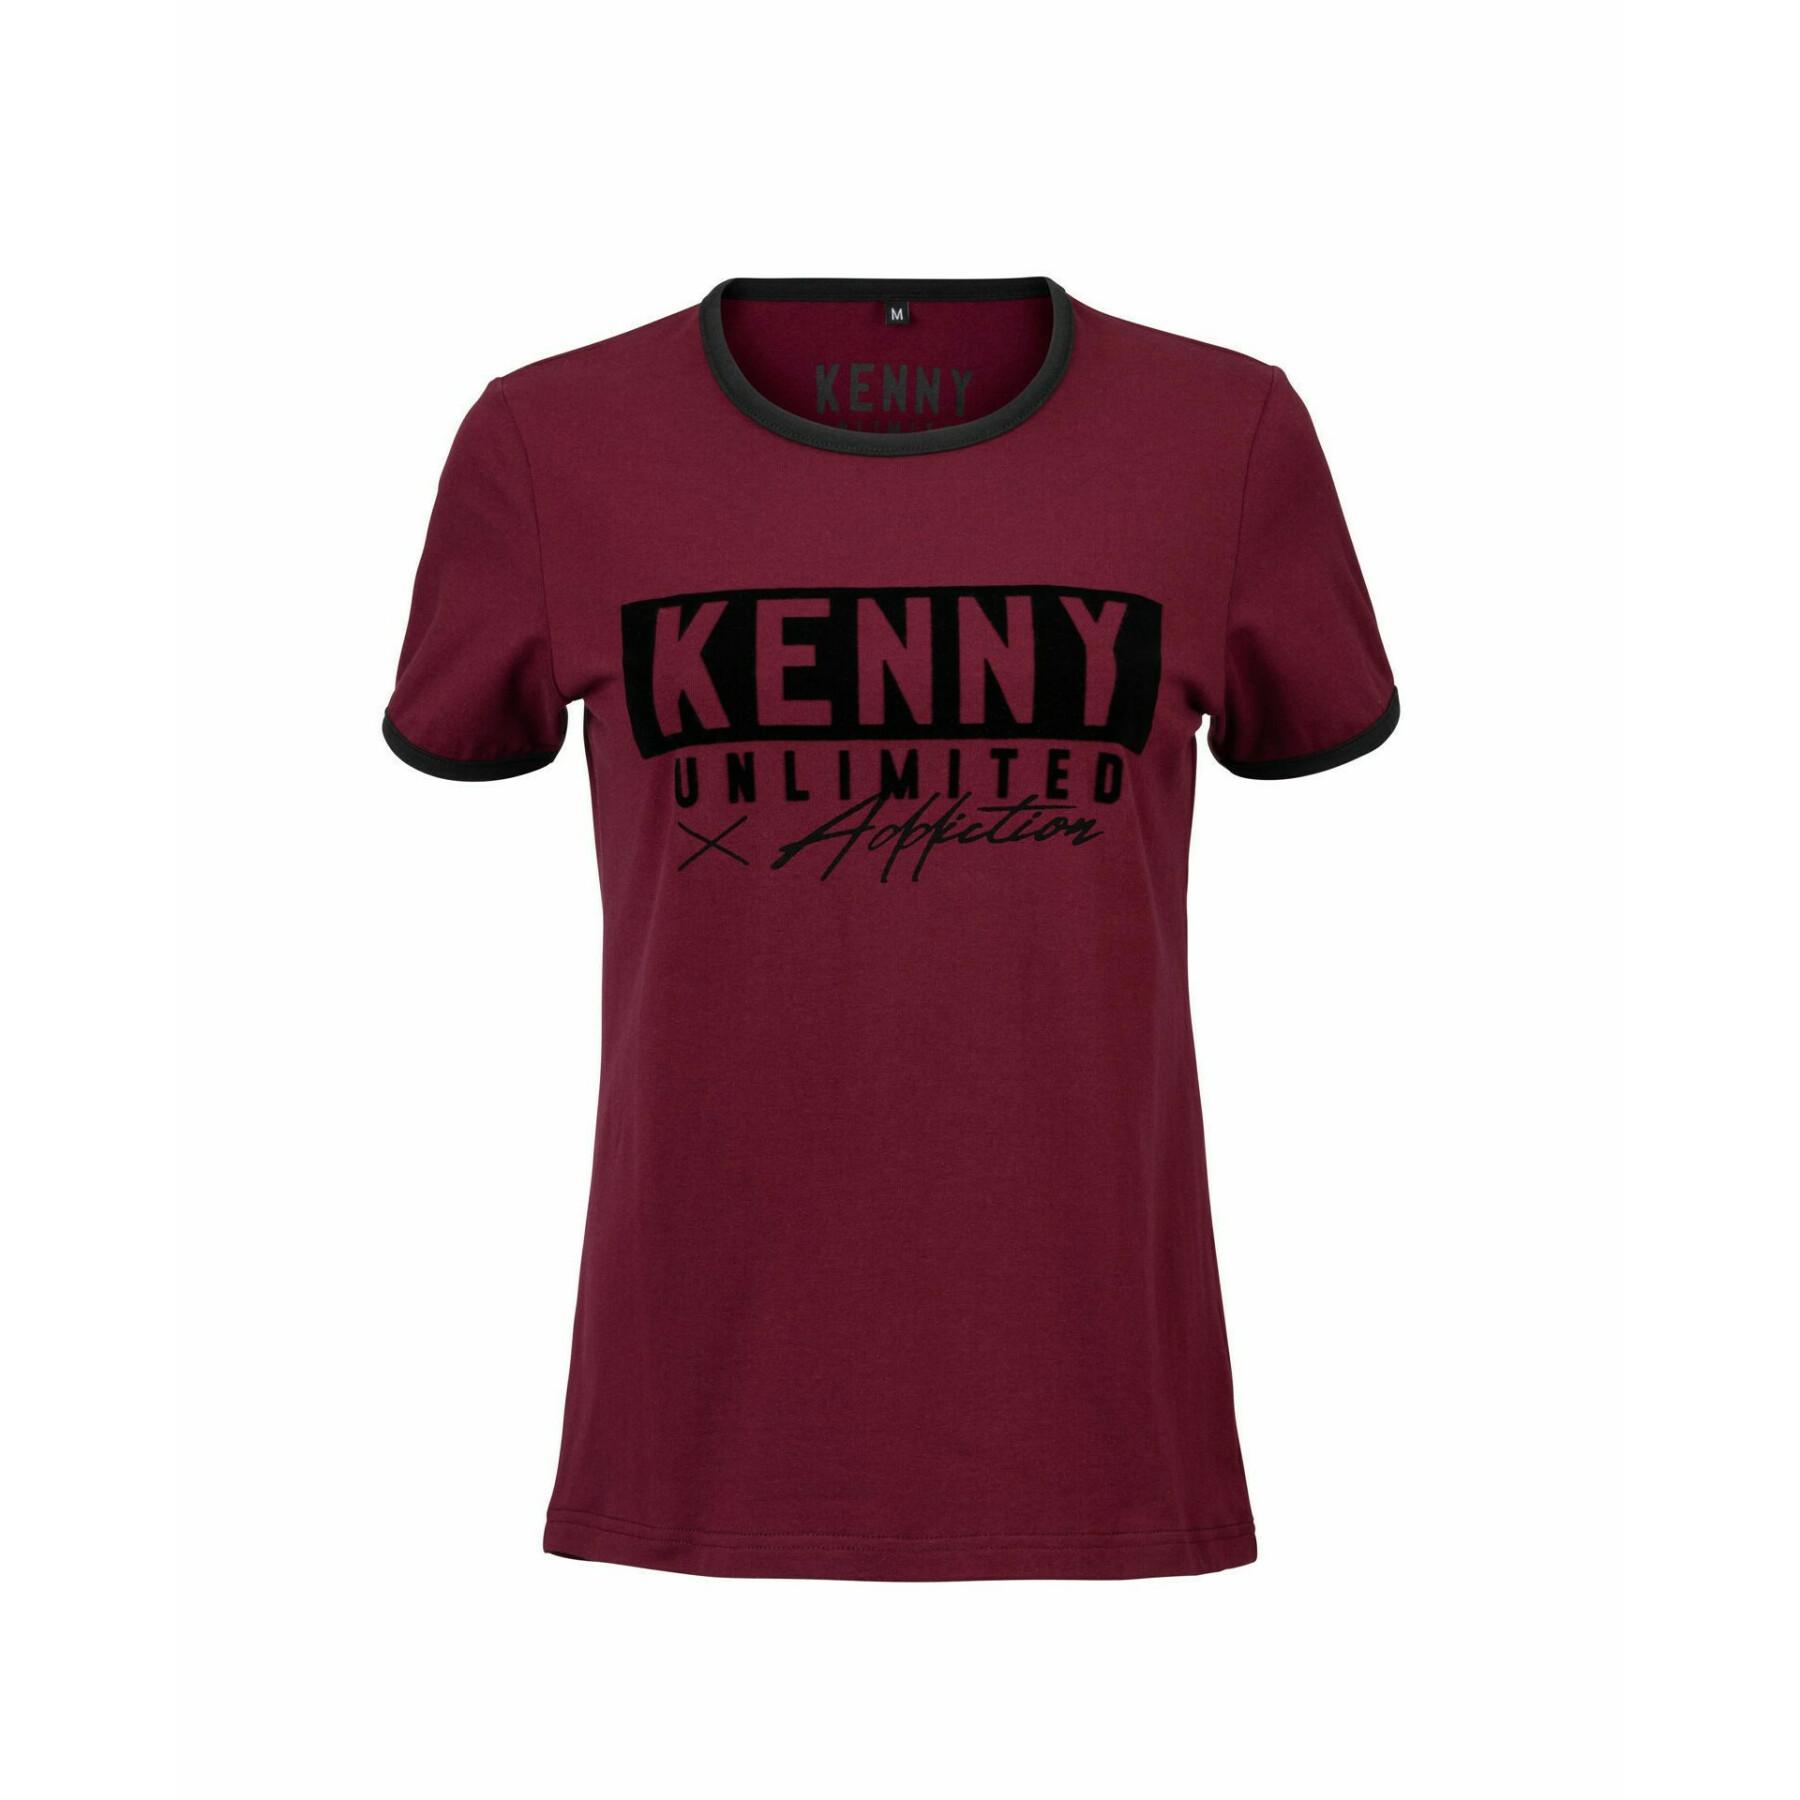 T-Shirt Frau Kenny label